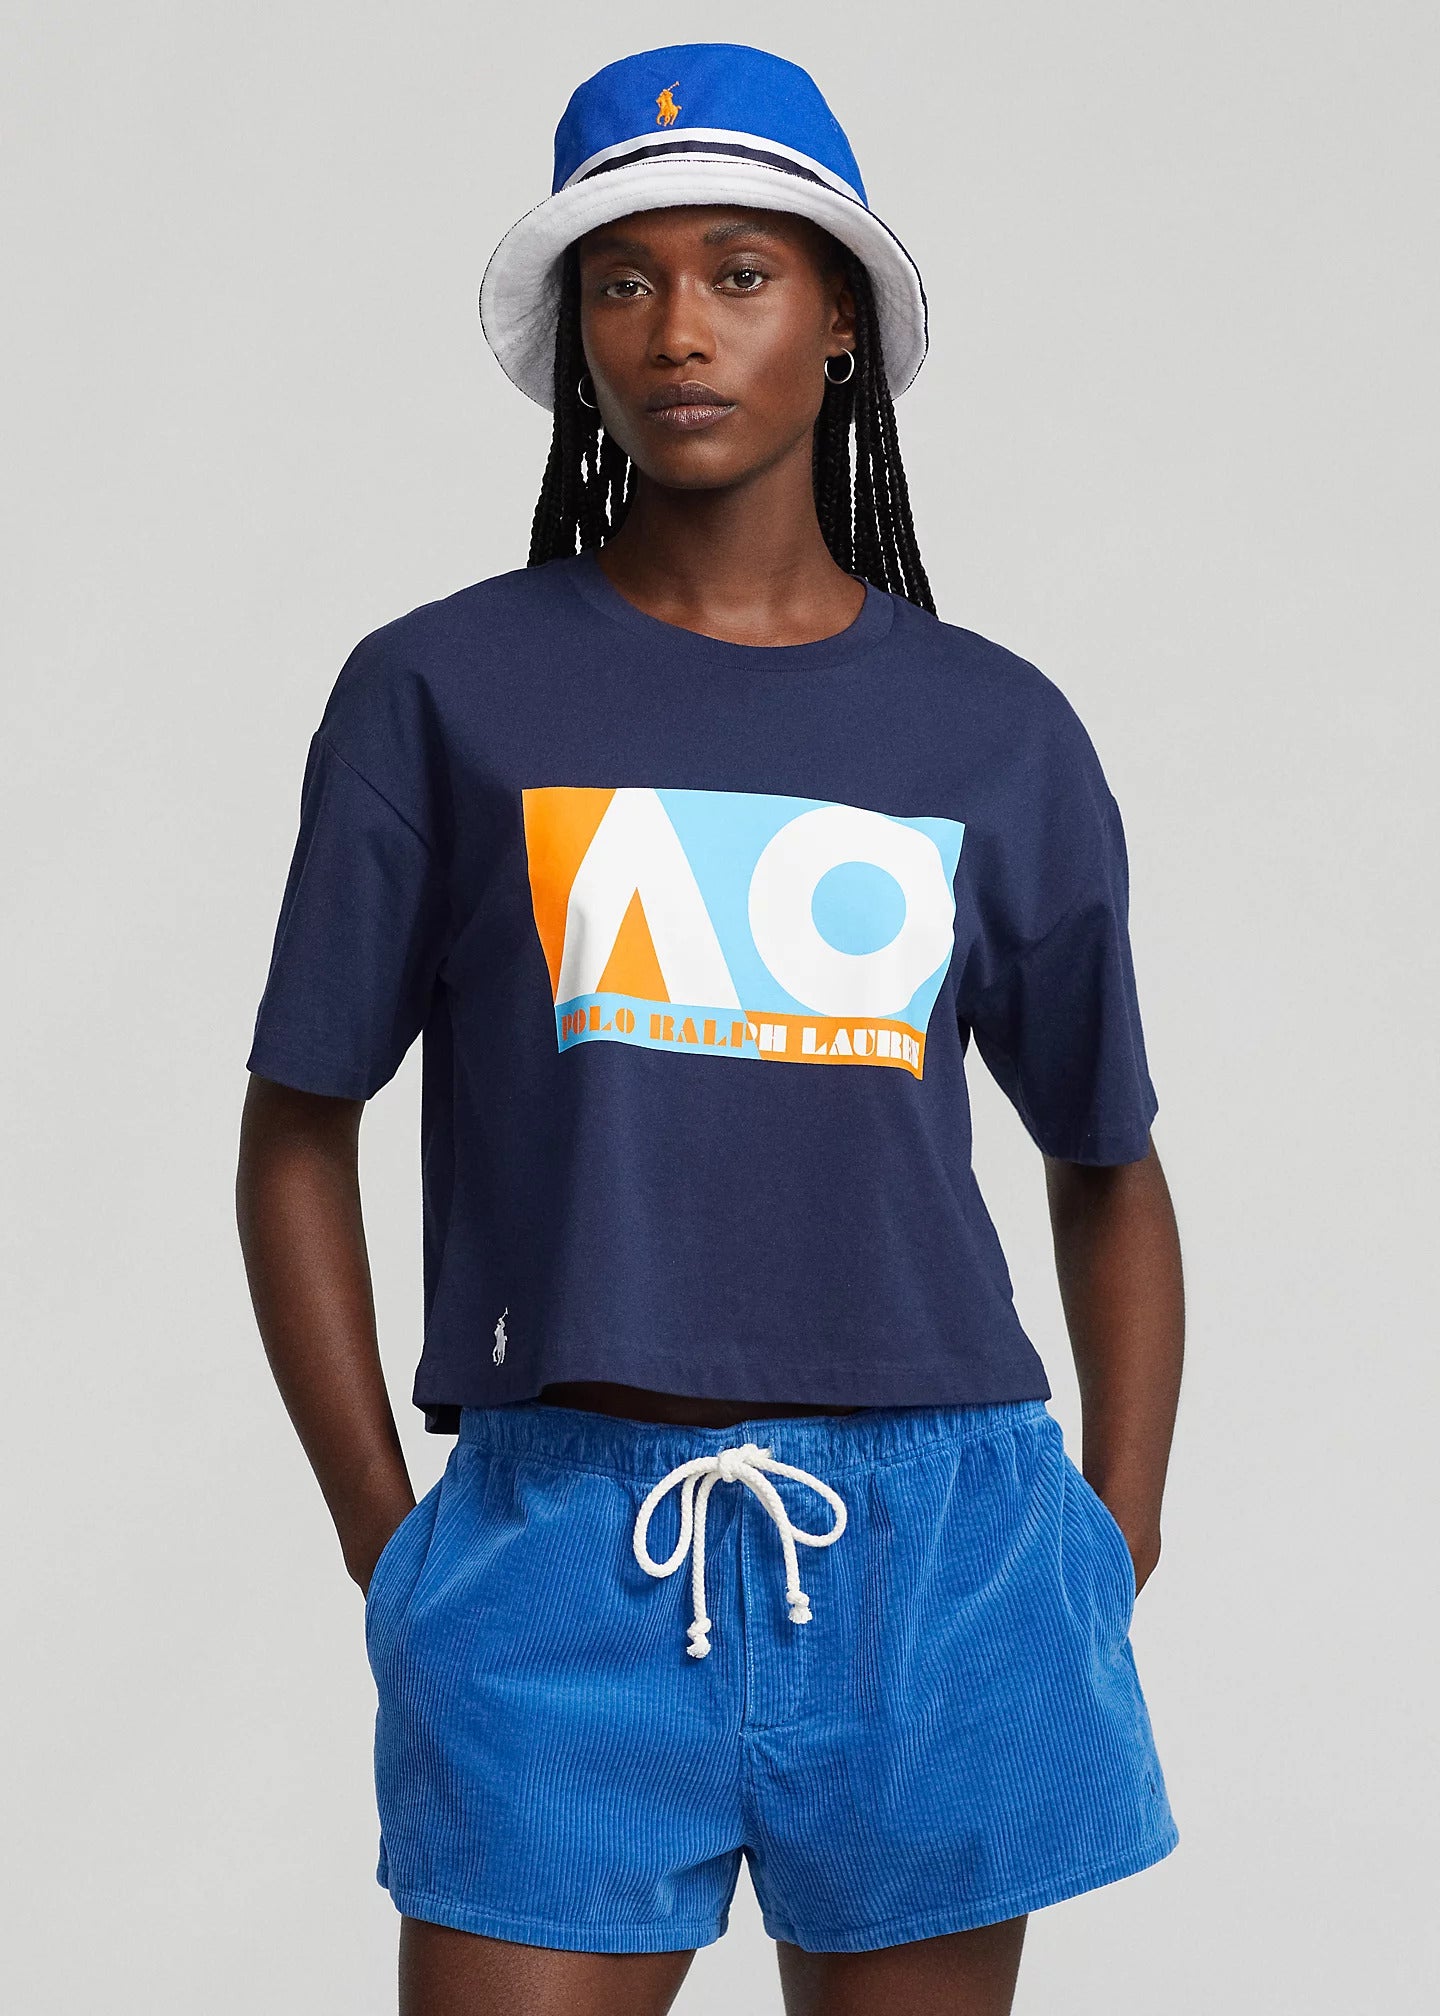 Women's T-Shirt Cropped AO Polo